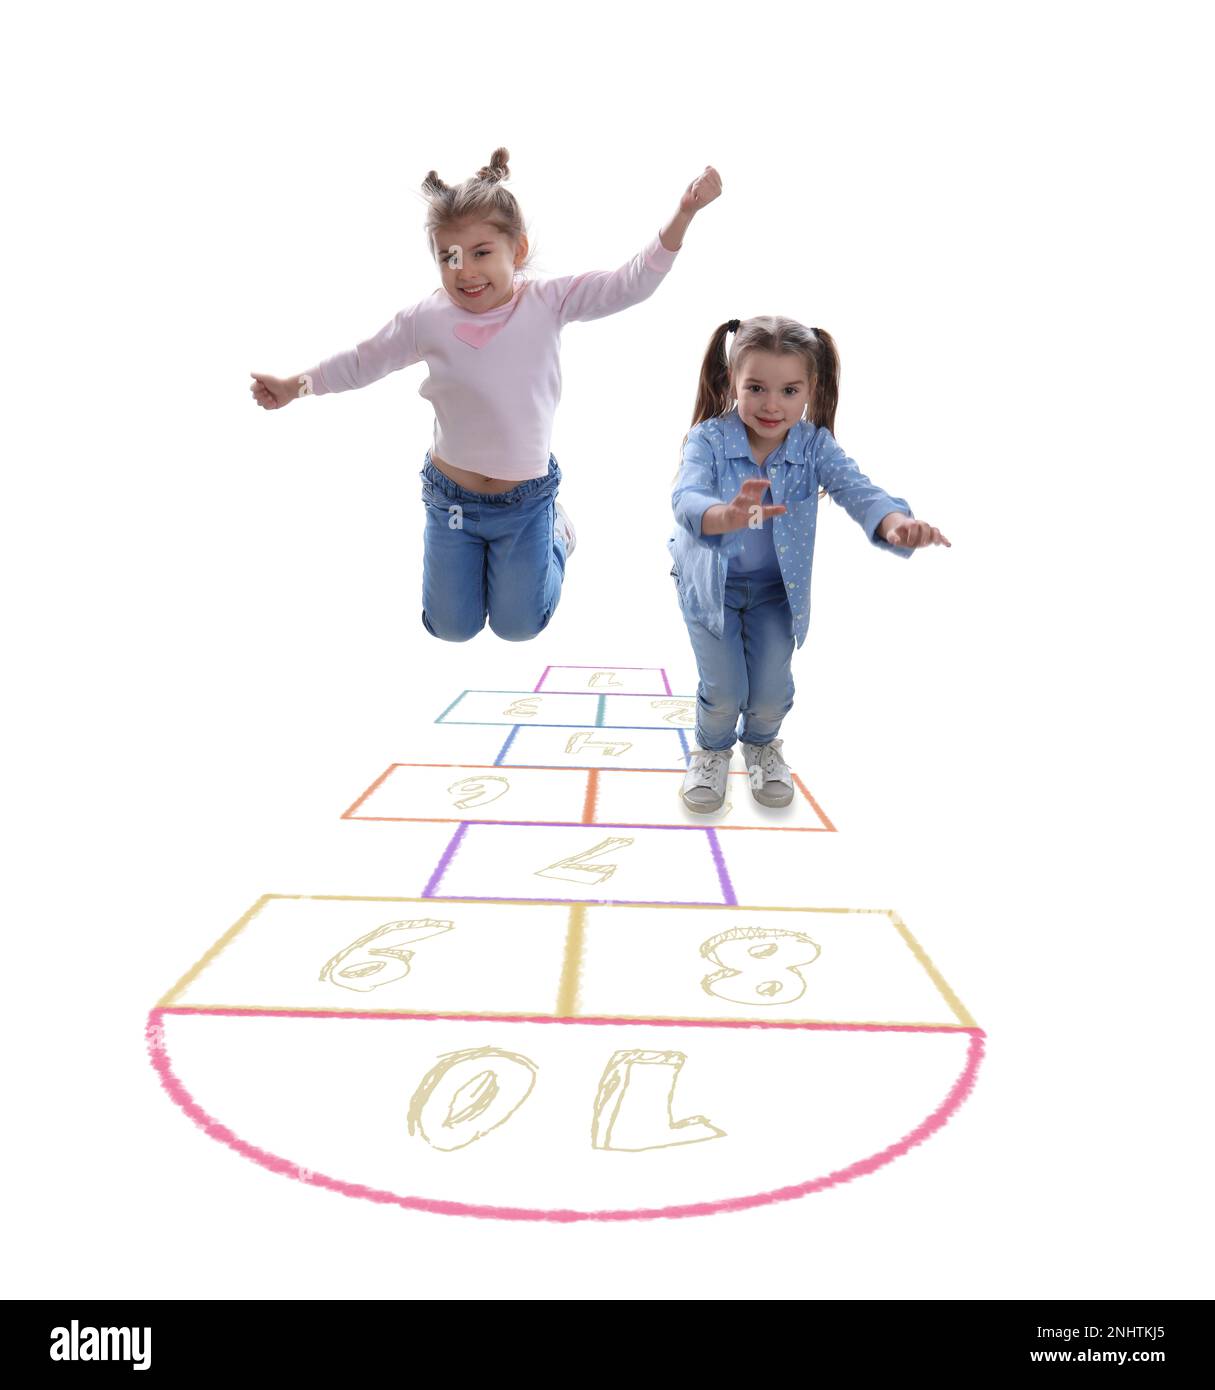 Mignons petites filles jouant le hopscotch sur fond blanc Banque D'Images